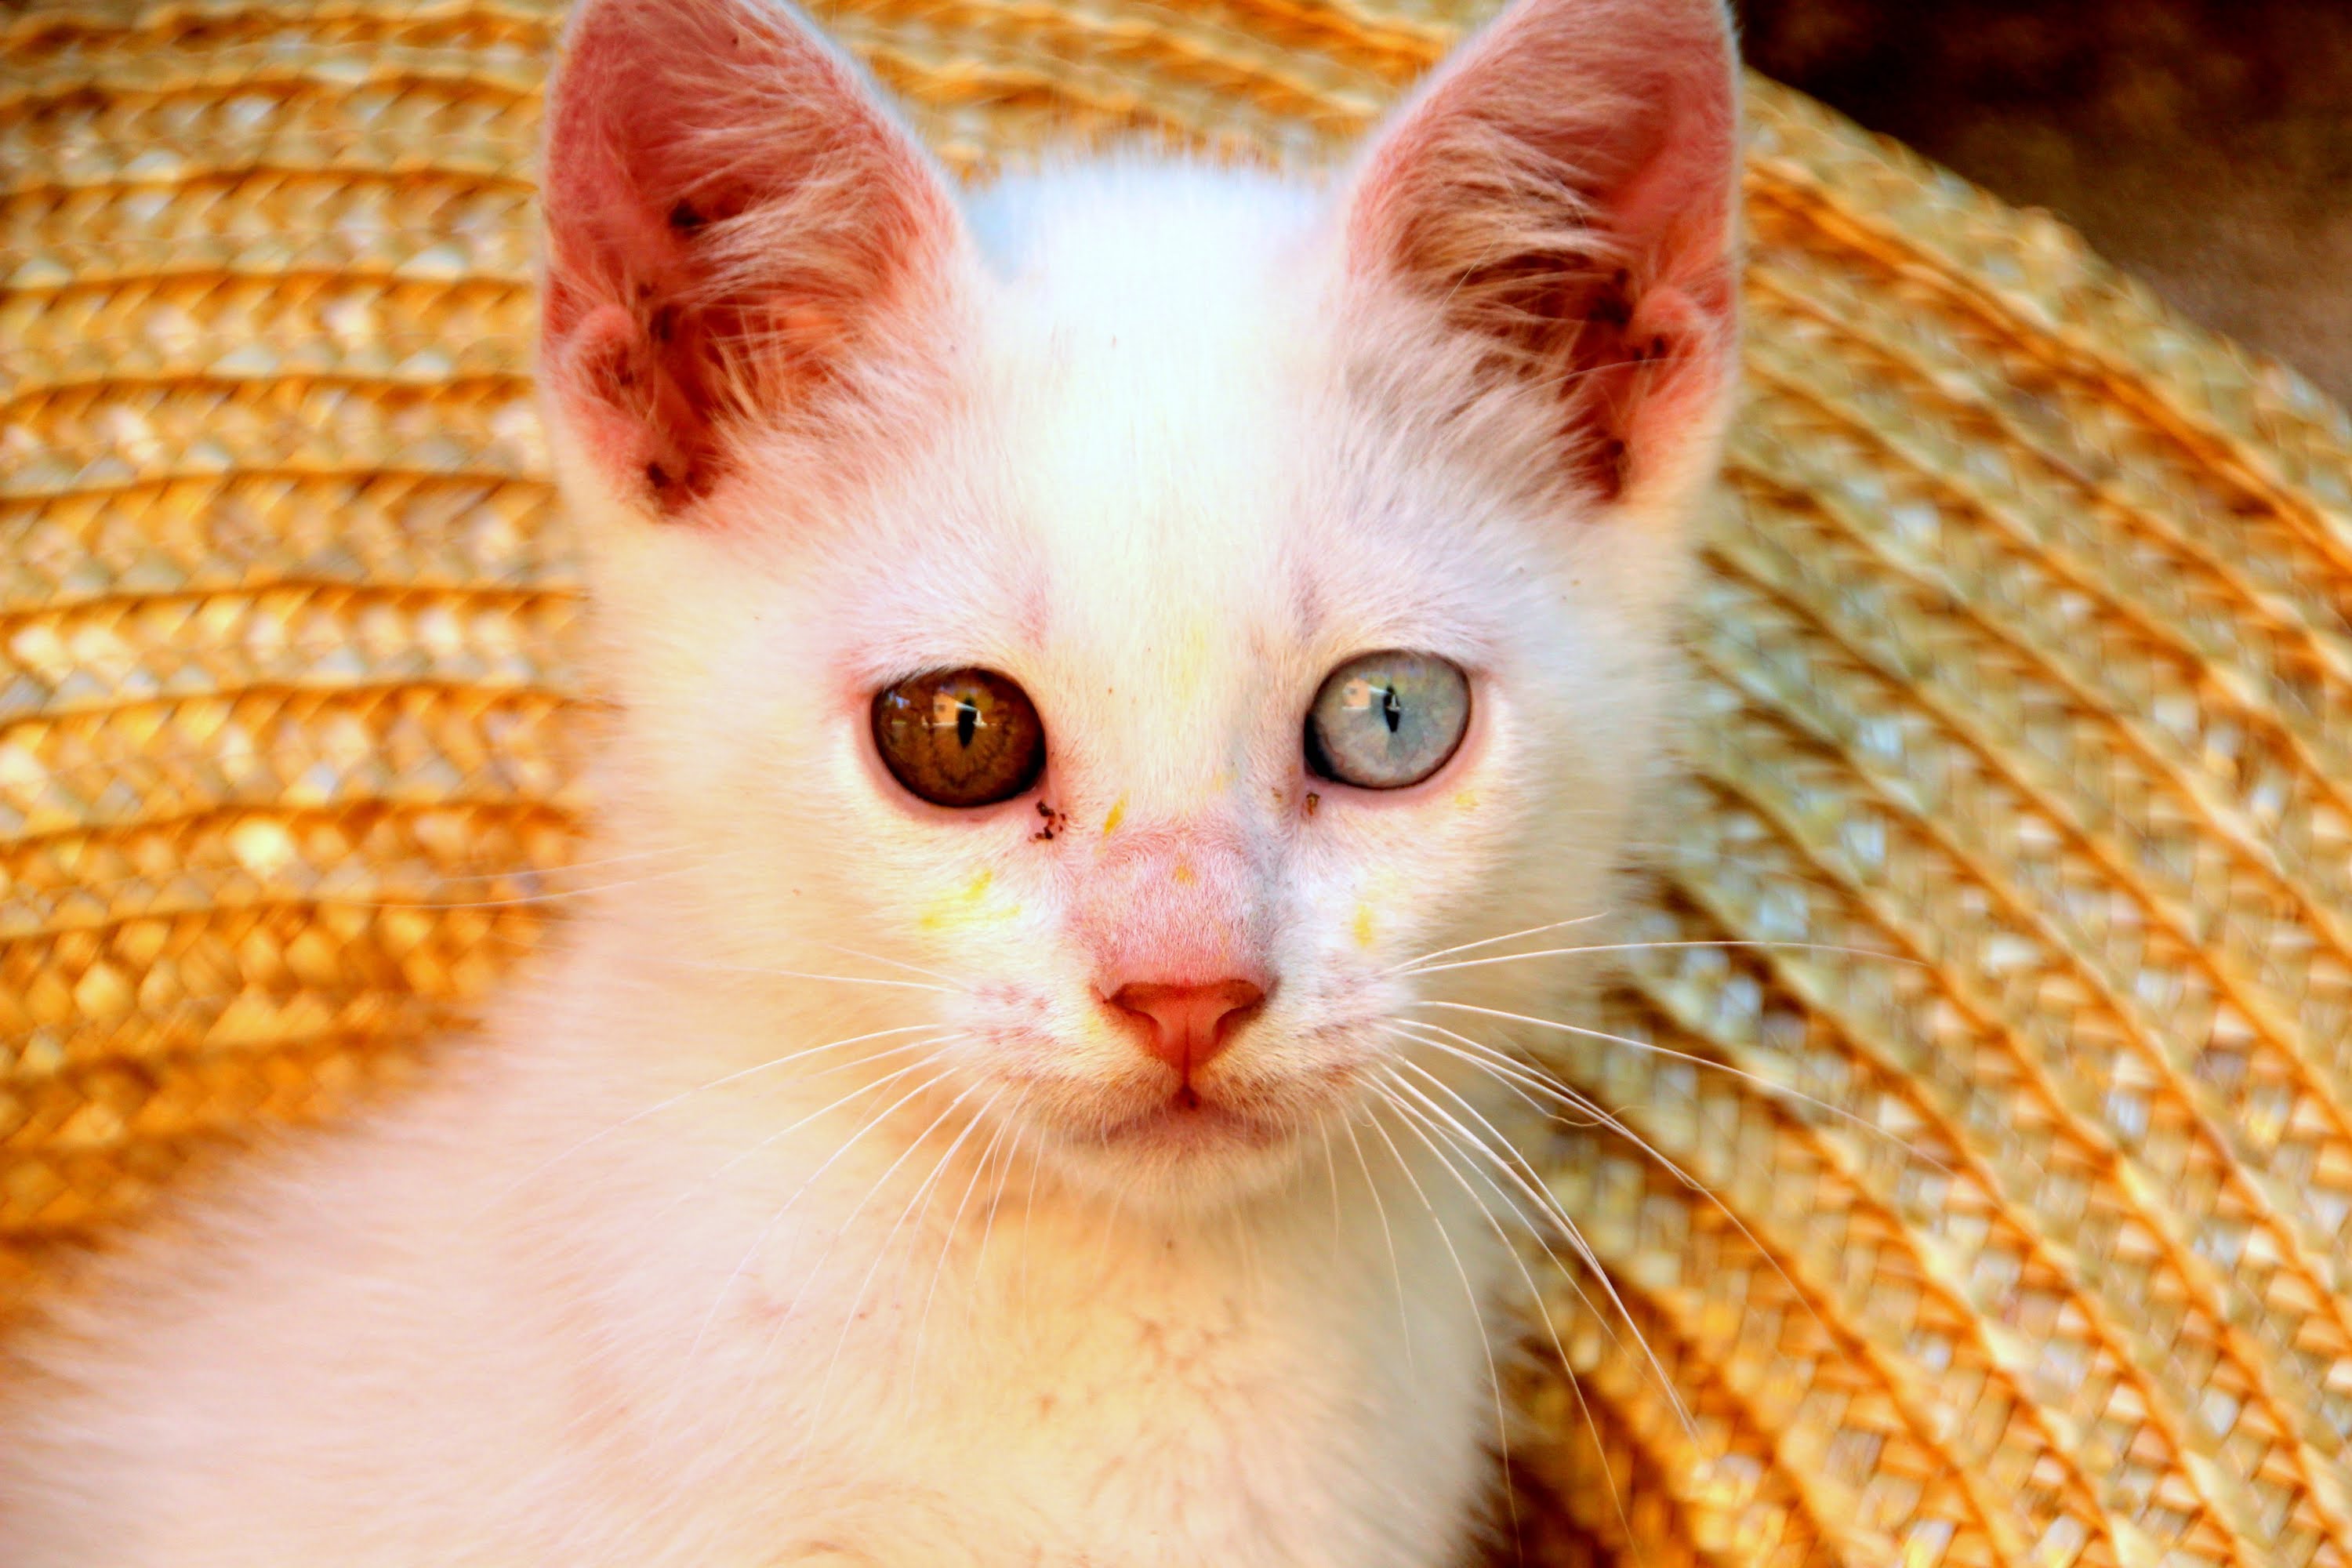 O narizinho rosado é uma das marcas do Gato Albino